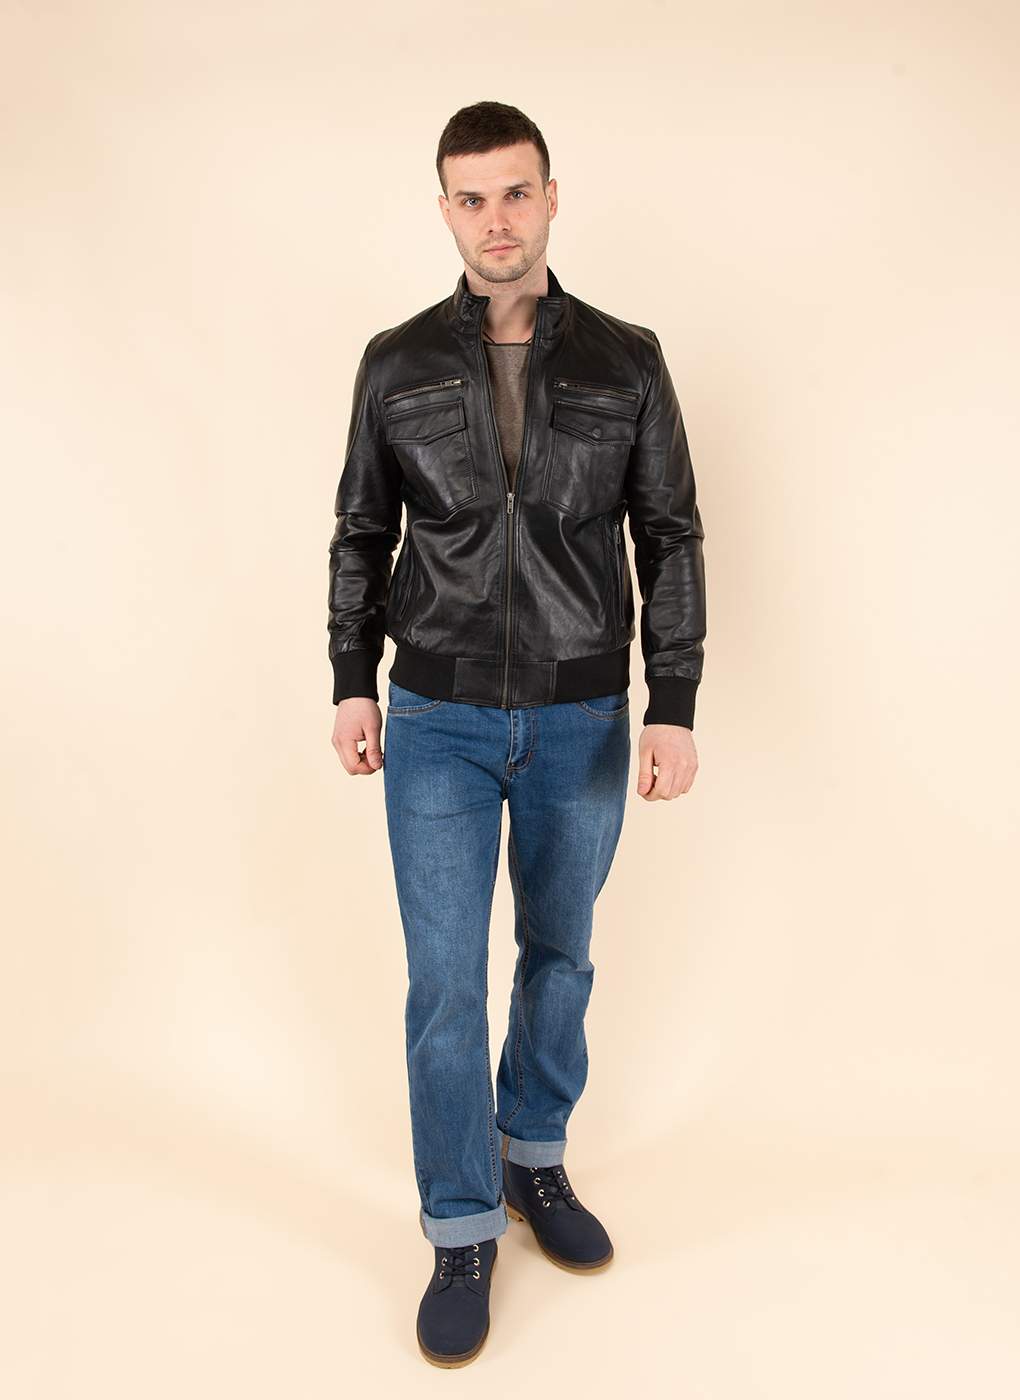 Кожаная куртка мужская Каляев 1581011 черная 52 RU